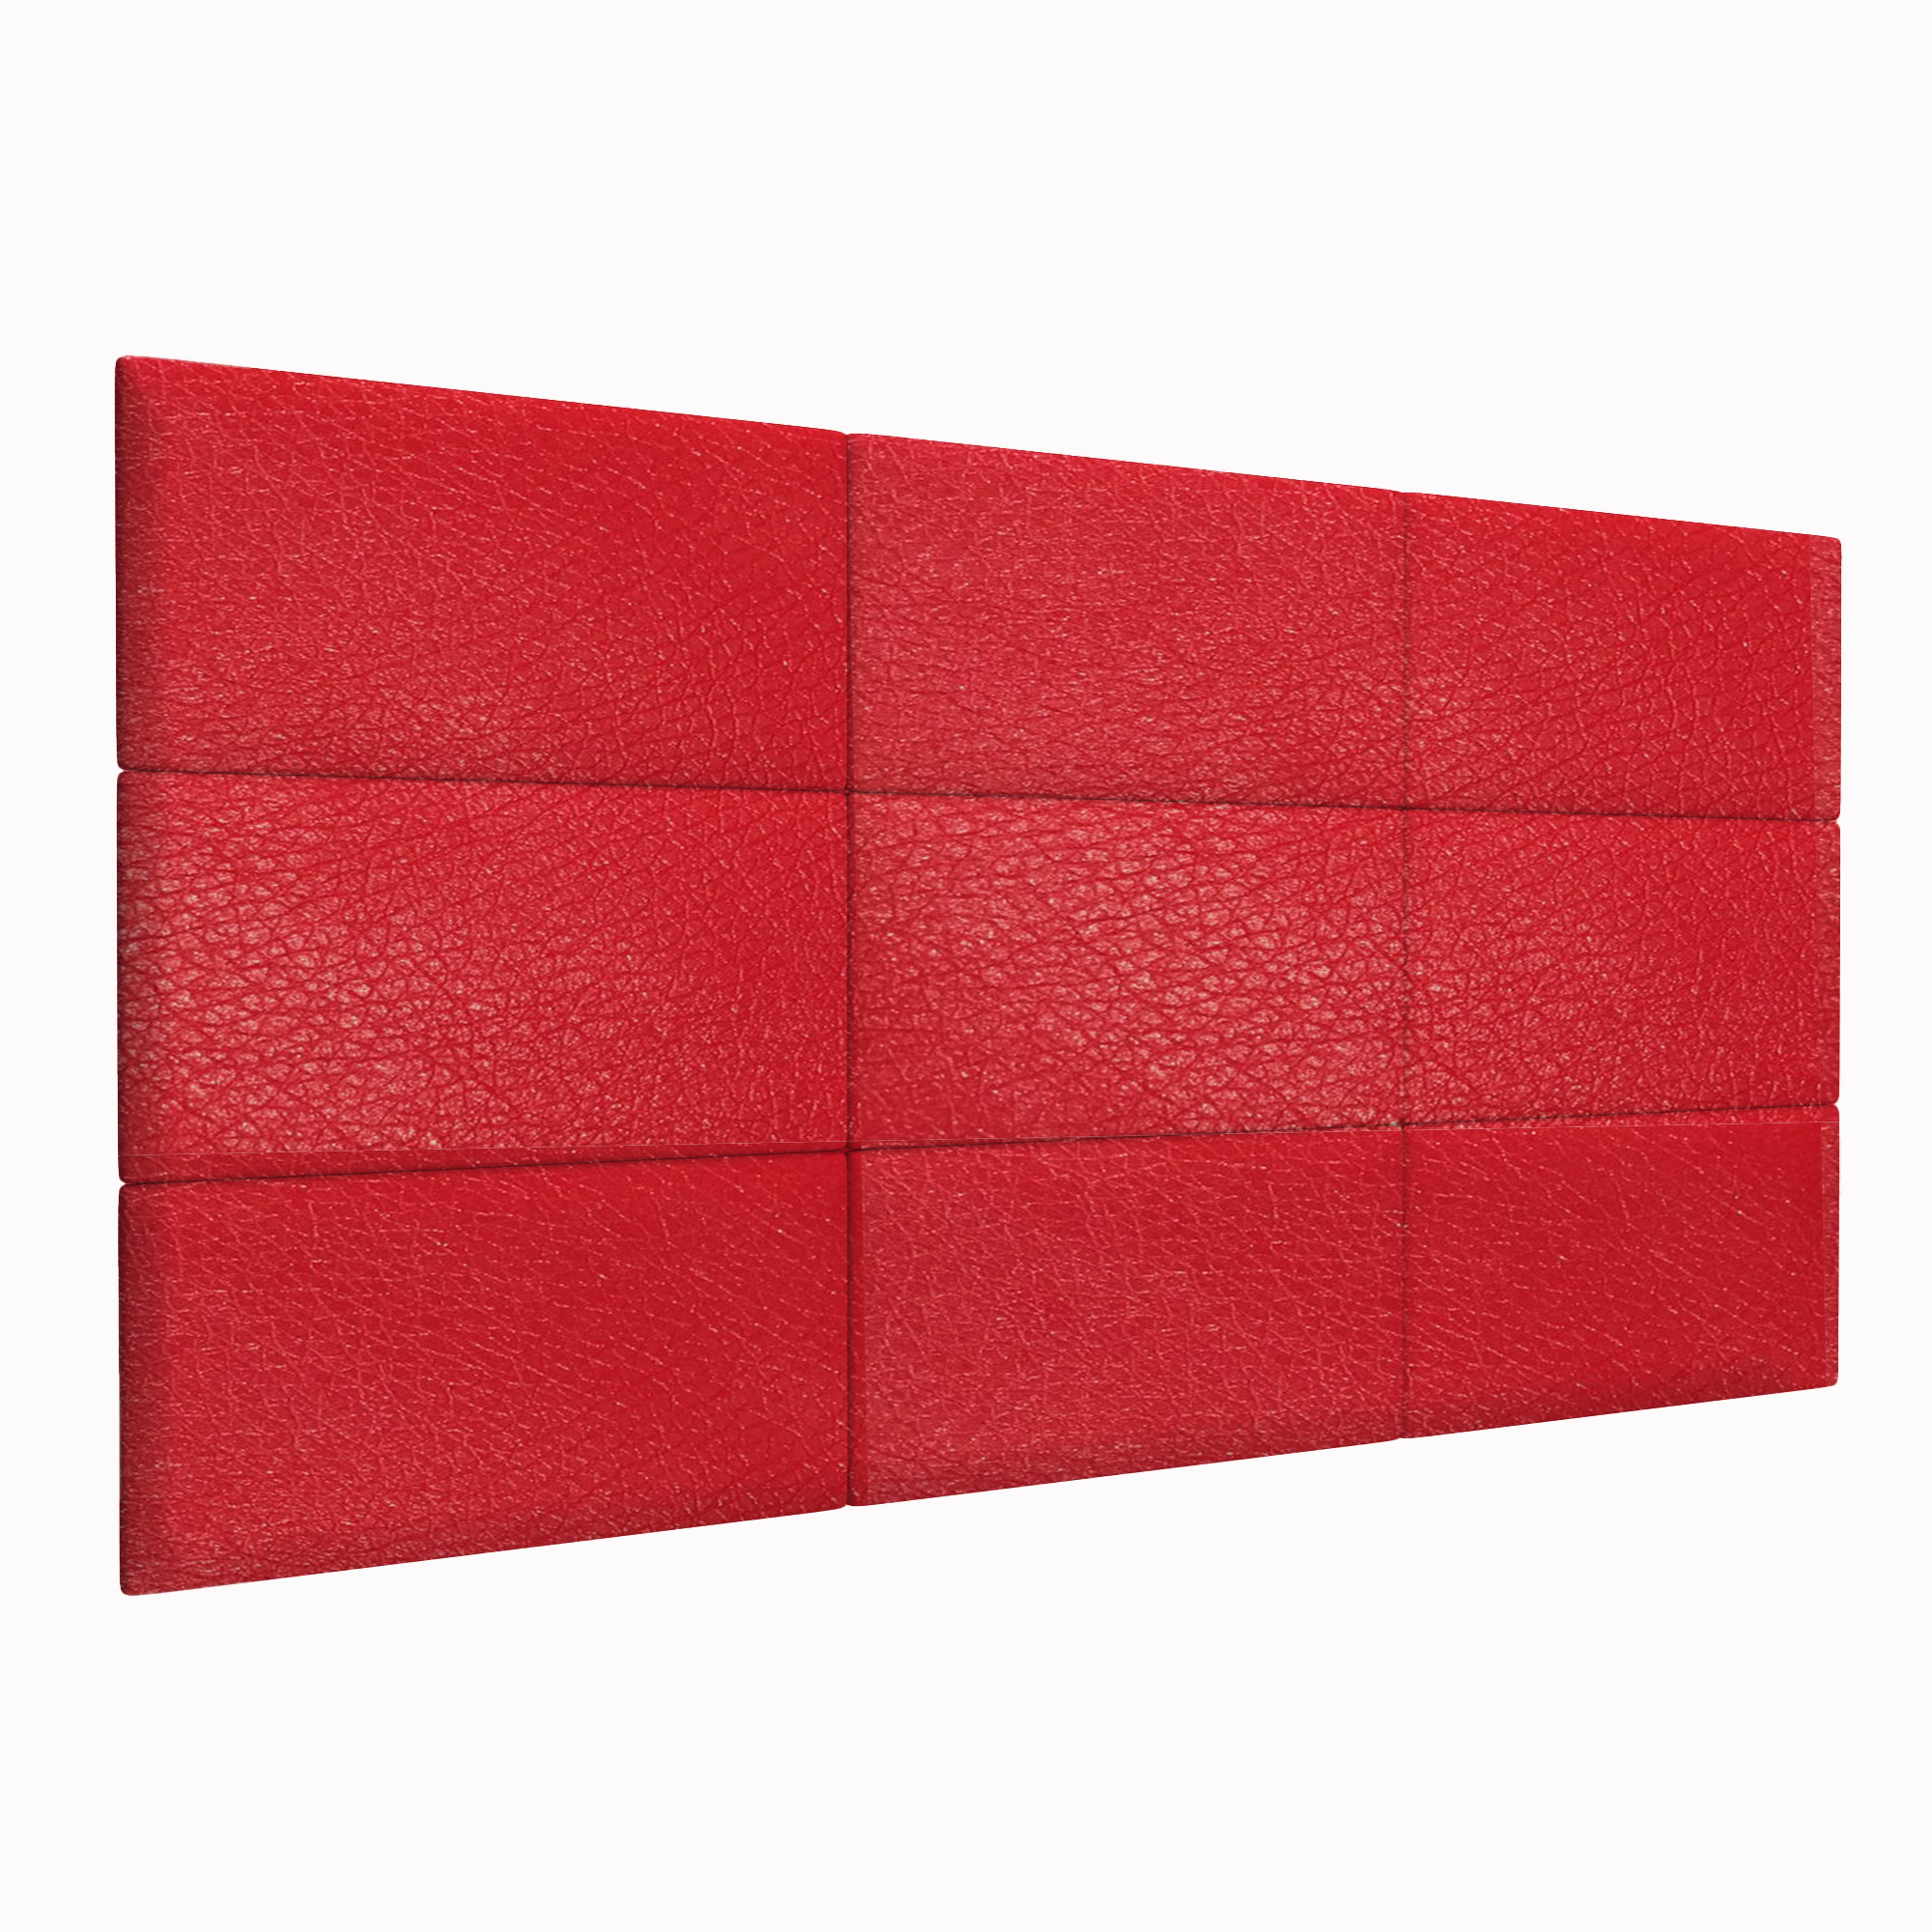 Мягкие обои Eco Leather Red 30х60 см 4 шт.